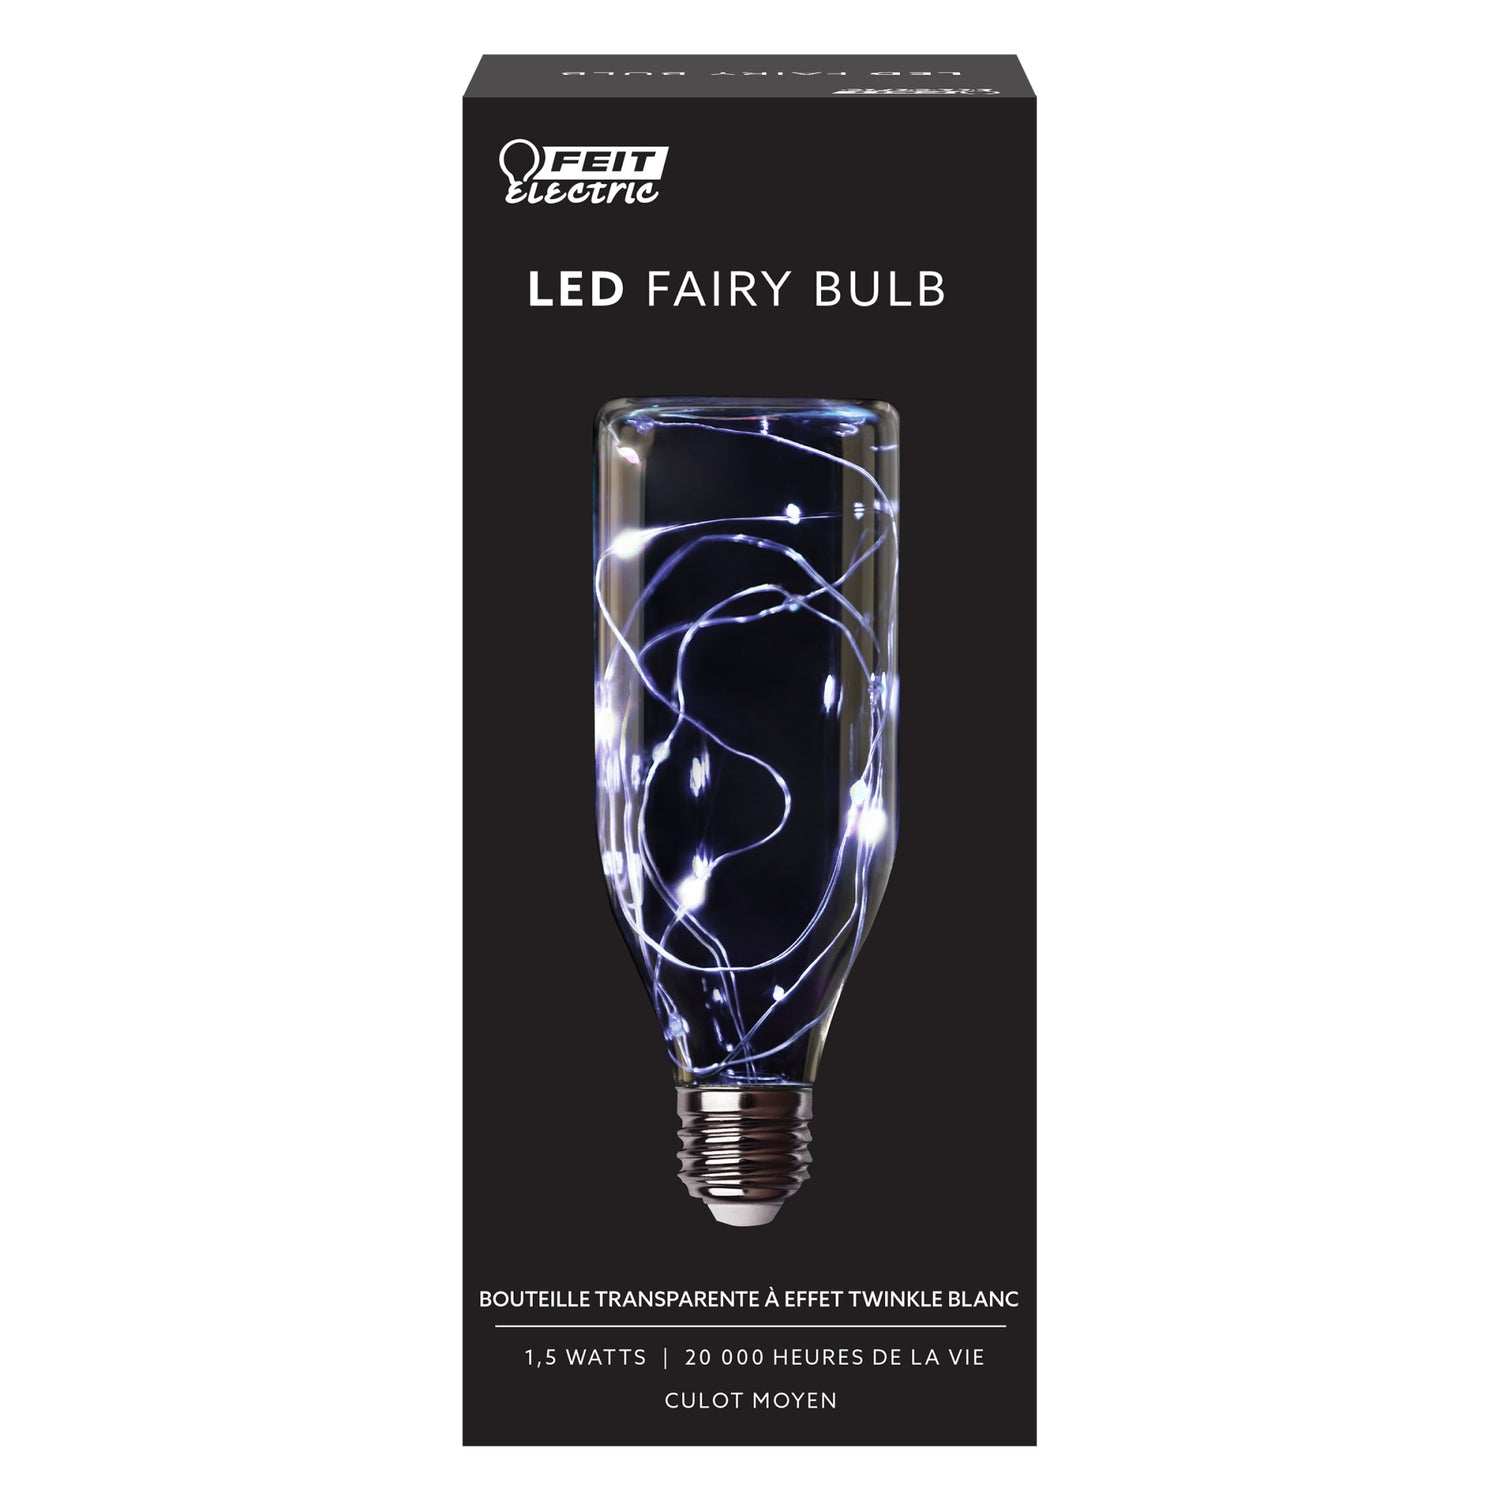 Twinkling LED Fairy Bottle Light Bulb